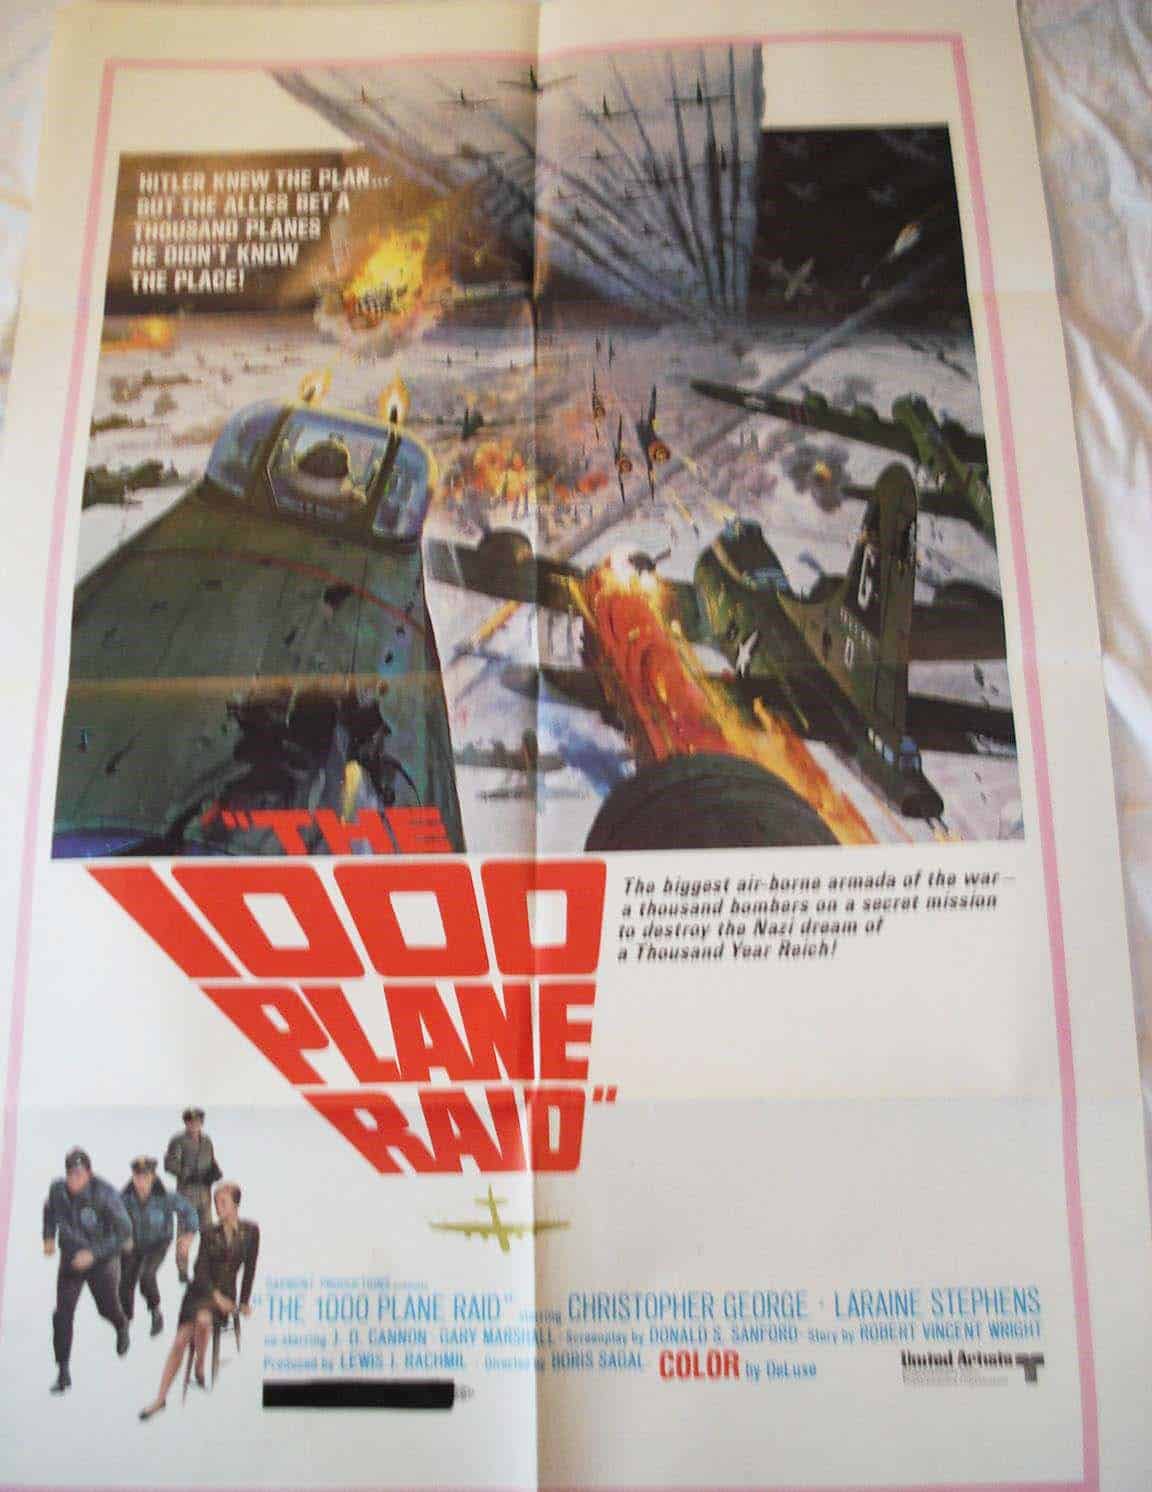 1000 plane raid movie poster